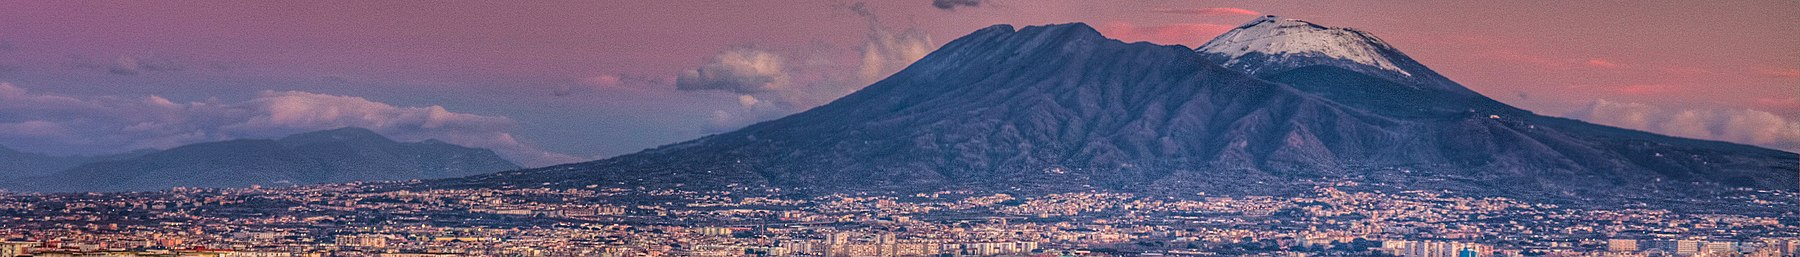 Vesuvius -vuori Wikivoyage banner.jpg